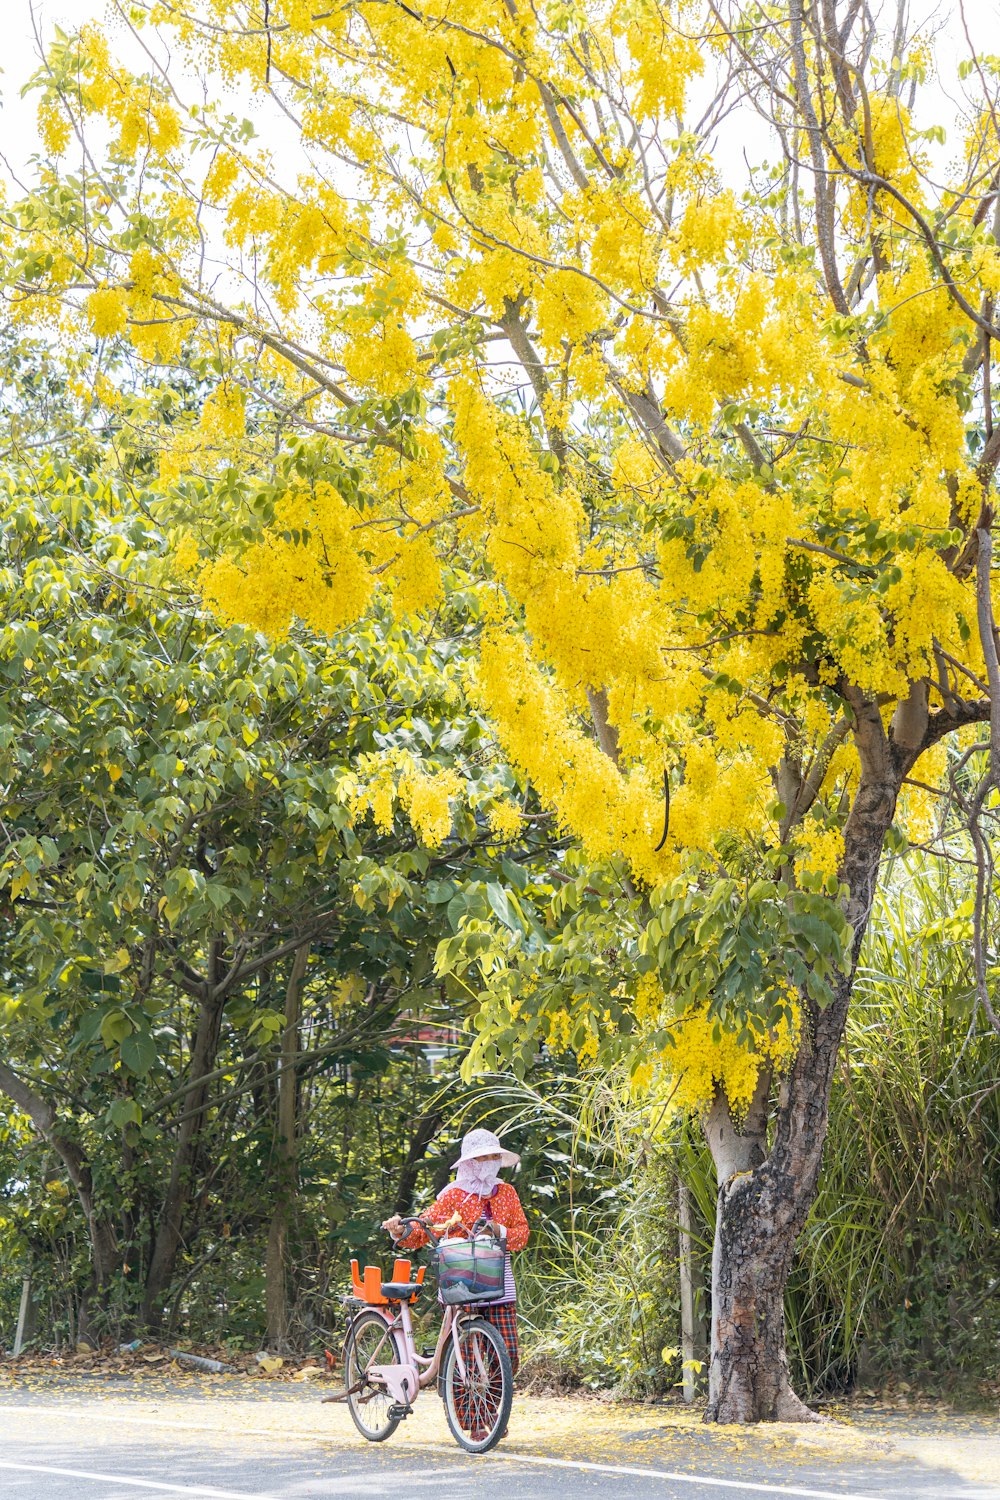 une personne qui fait du vélo dans une rue à côté d’un arbre